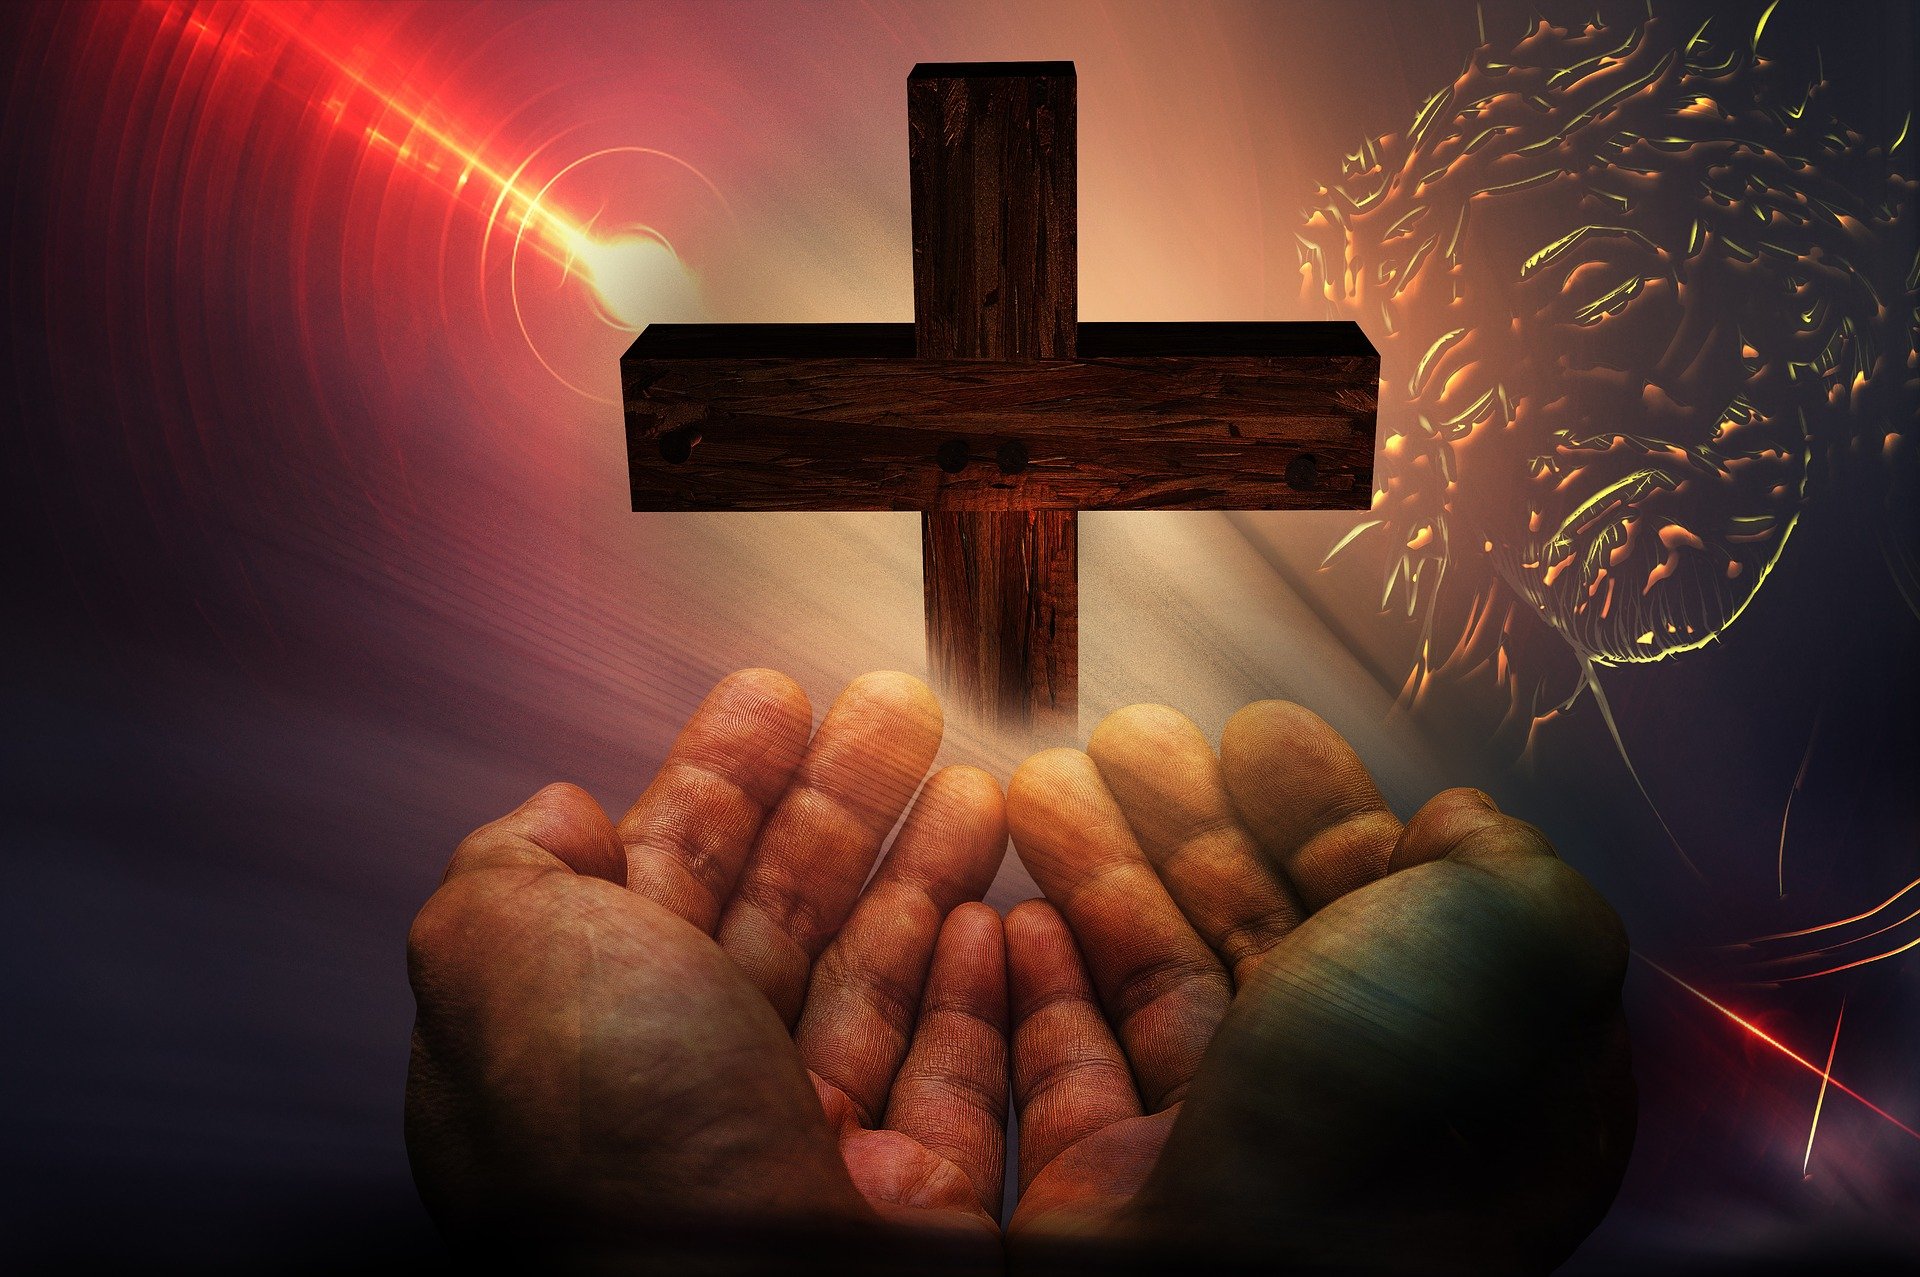 Uma ilustração de duas mãos erguidas próximas à uma cruz